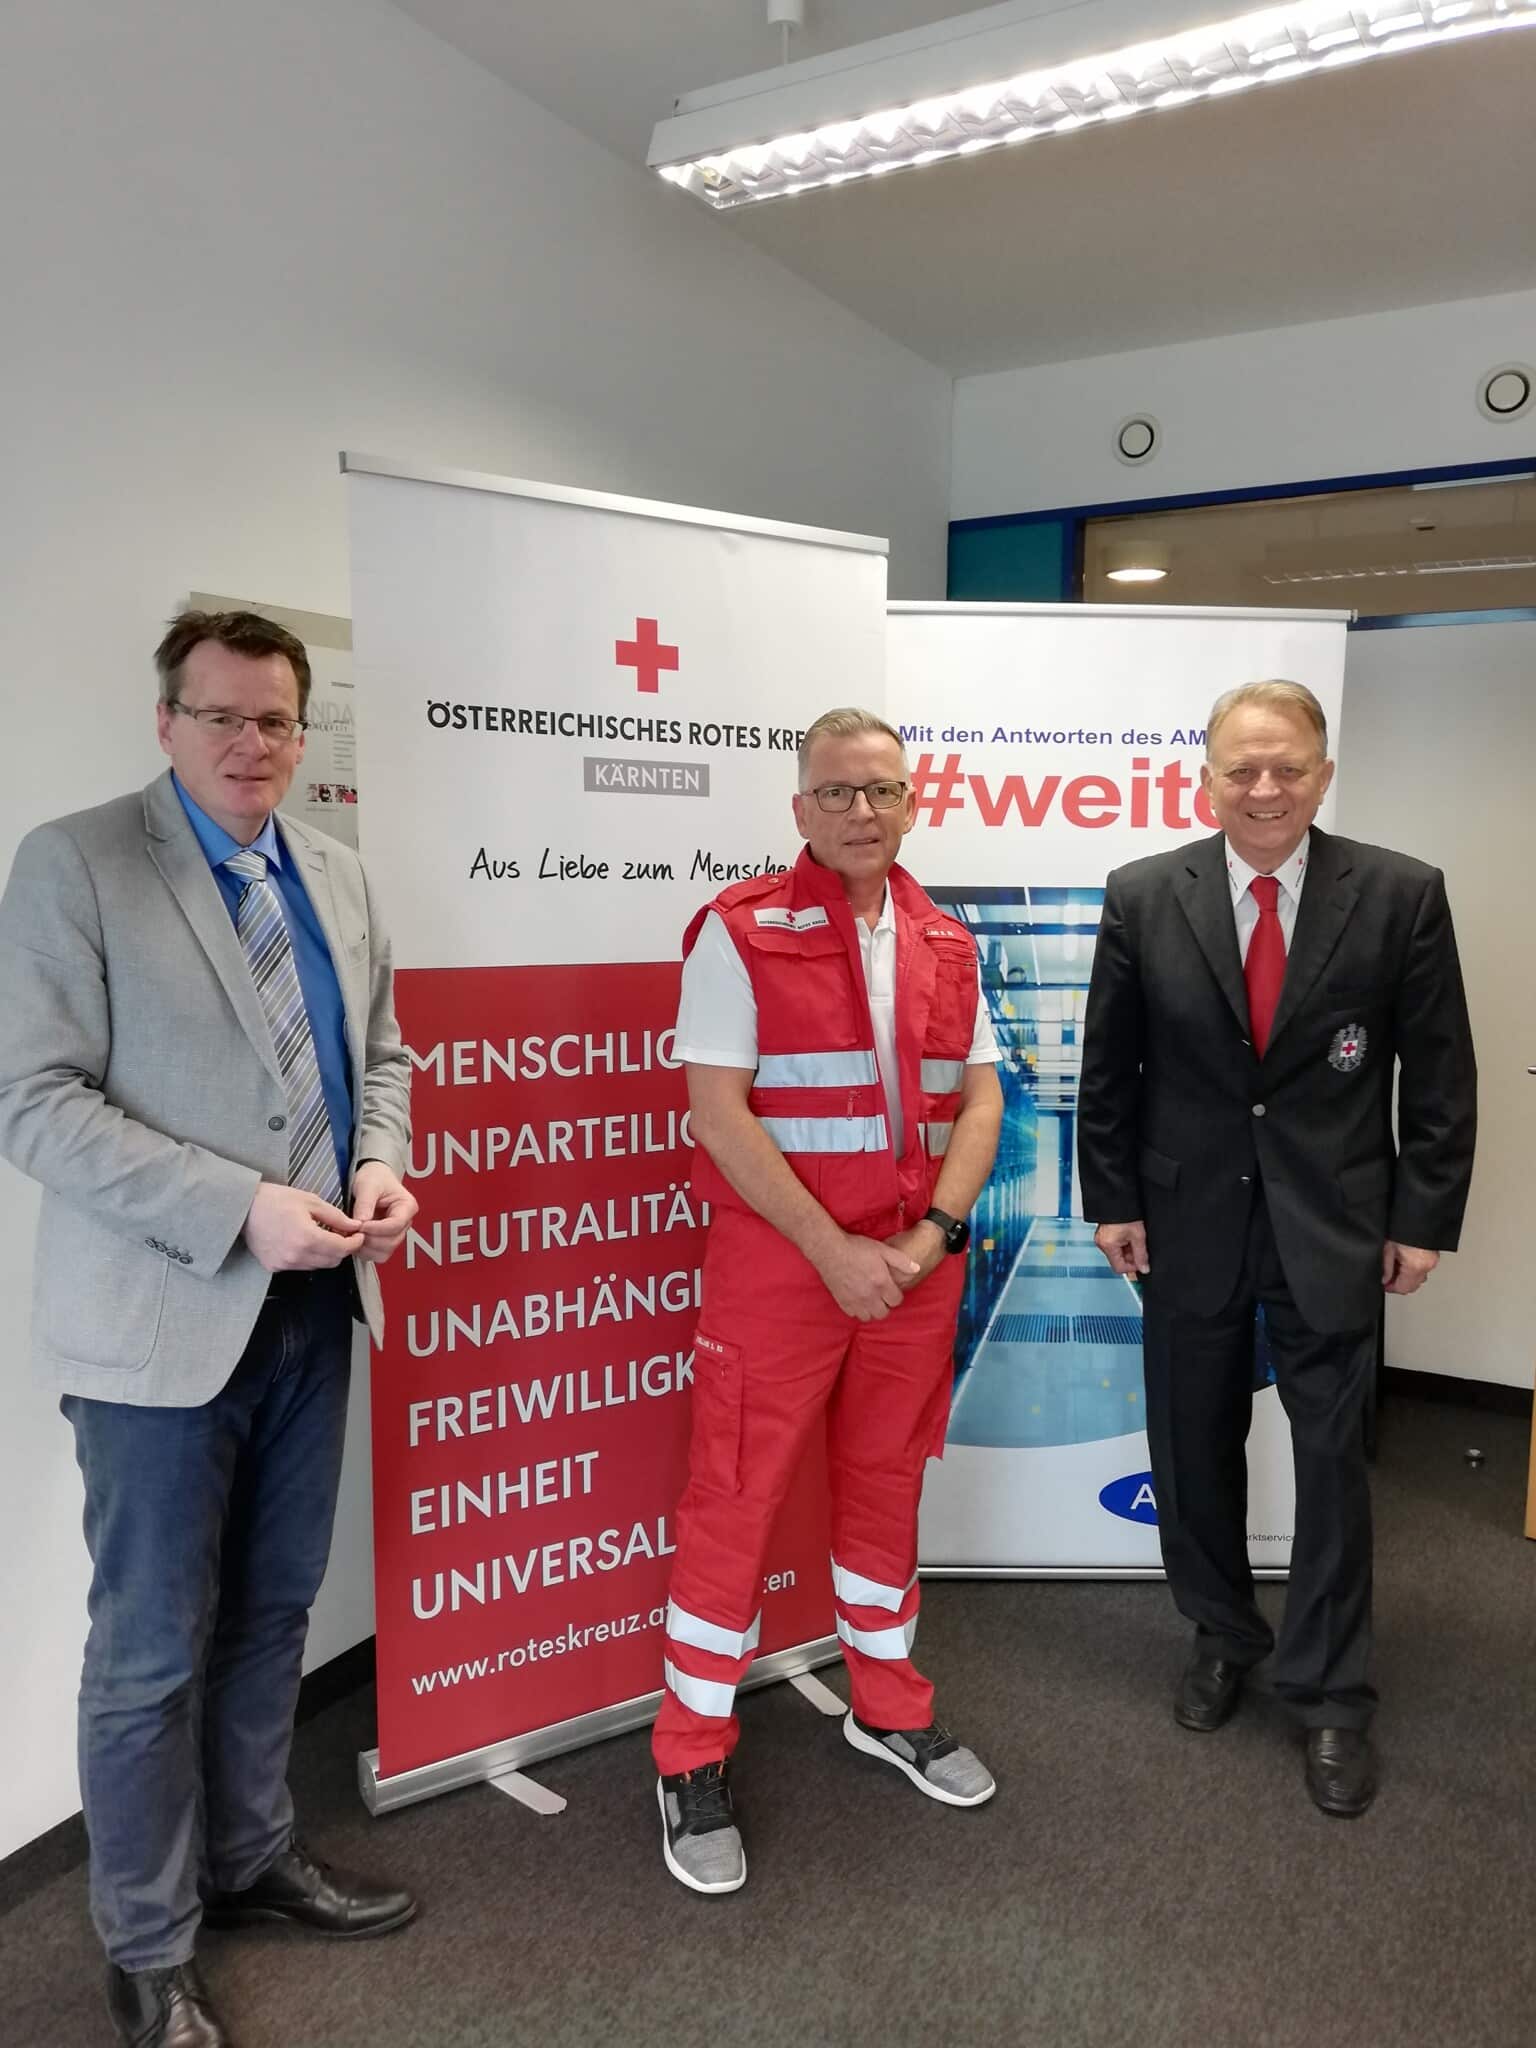 AMS-Landesgeschäftsführer Peter Wedenig, Siegfried Capellari, der 2018 über das AMS zum Roten Kreuz kam, sowie Rotkreuz-Präsident Präsident Peter Ambrozy.